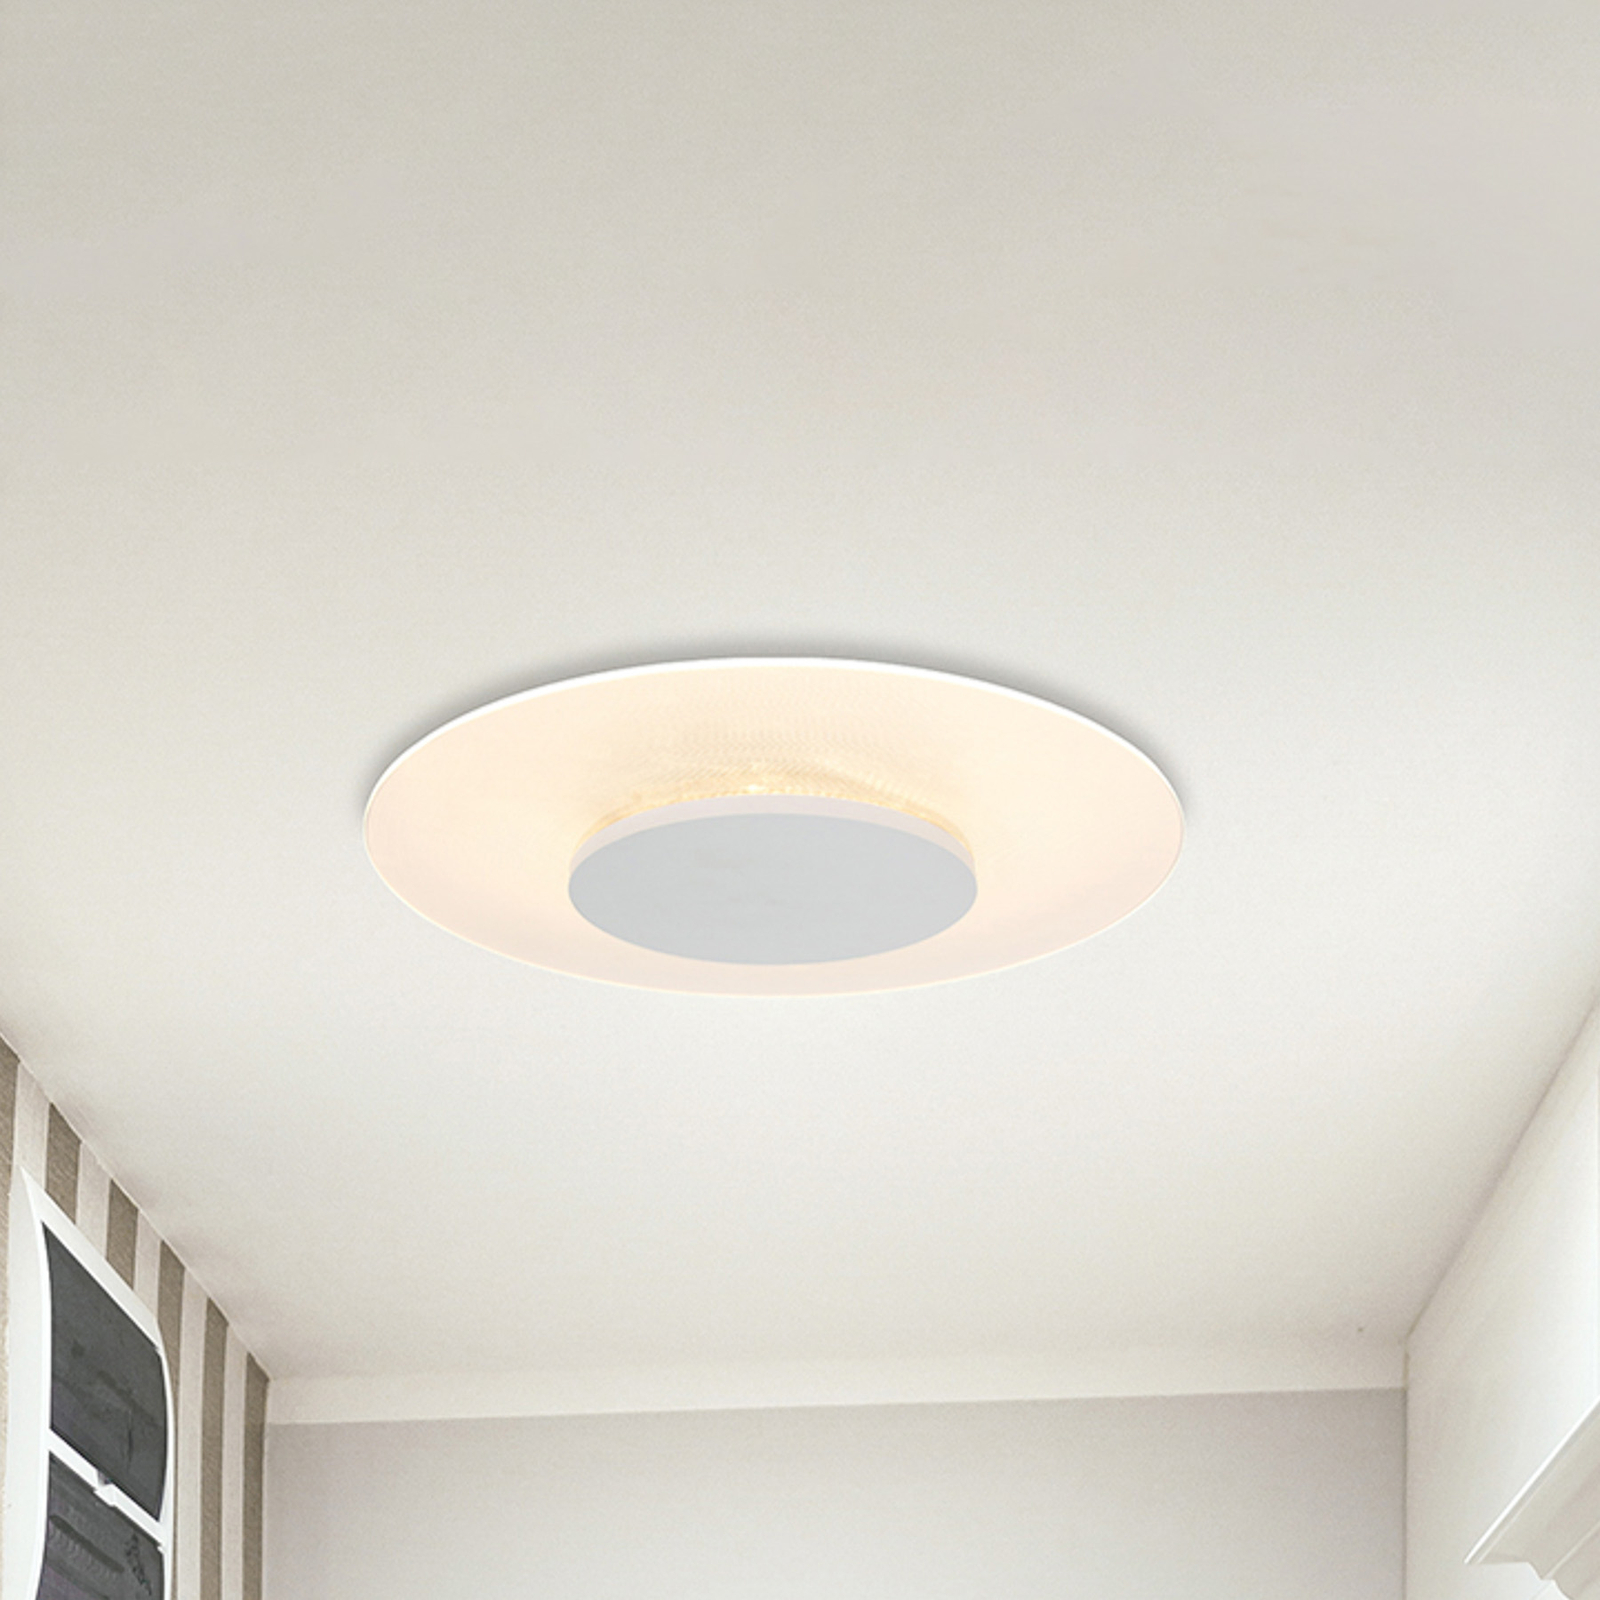 LED ceiling light Lido, white, Ø 36cm